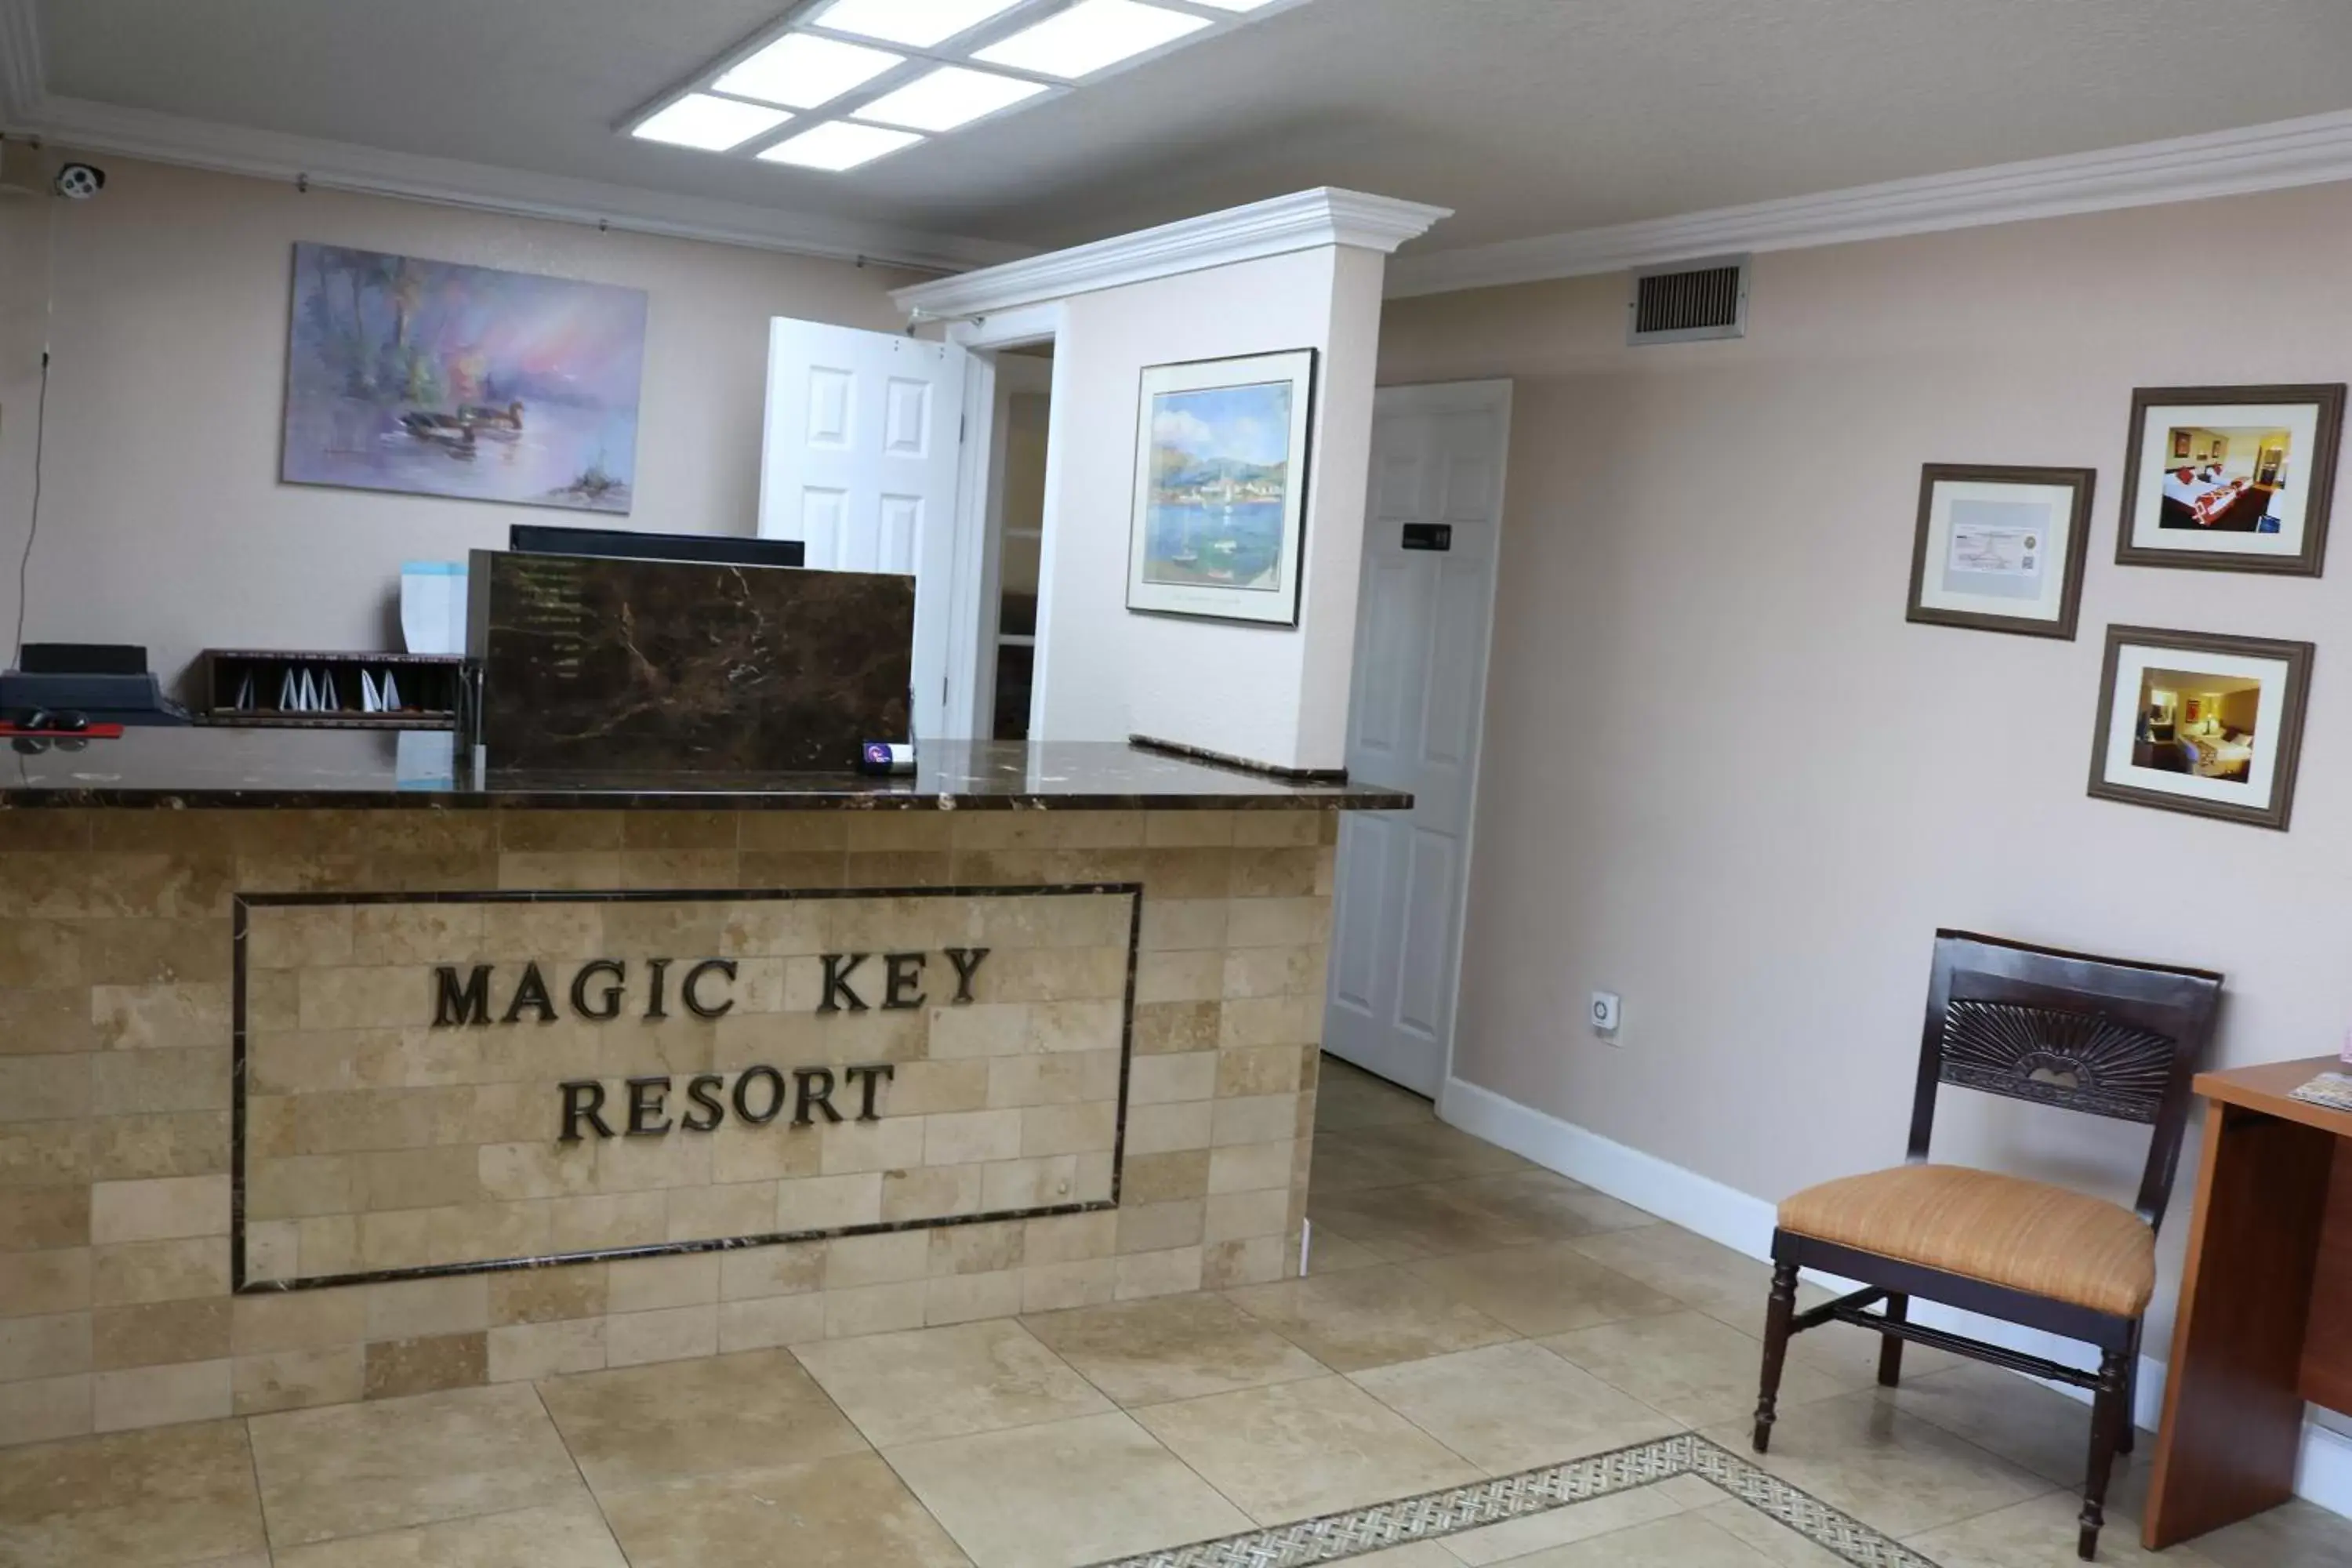 Lobby or reception, Lobby/Reception in Magic Key - Near Disney